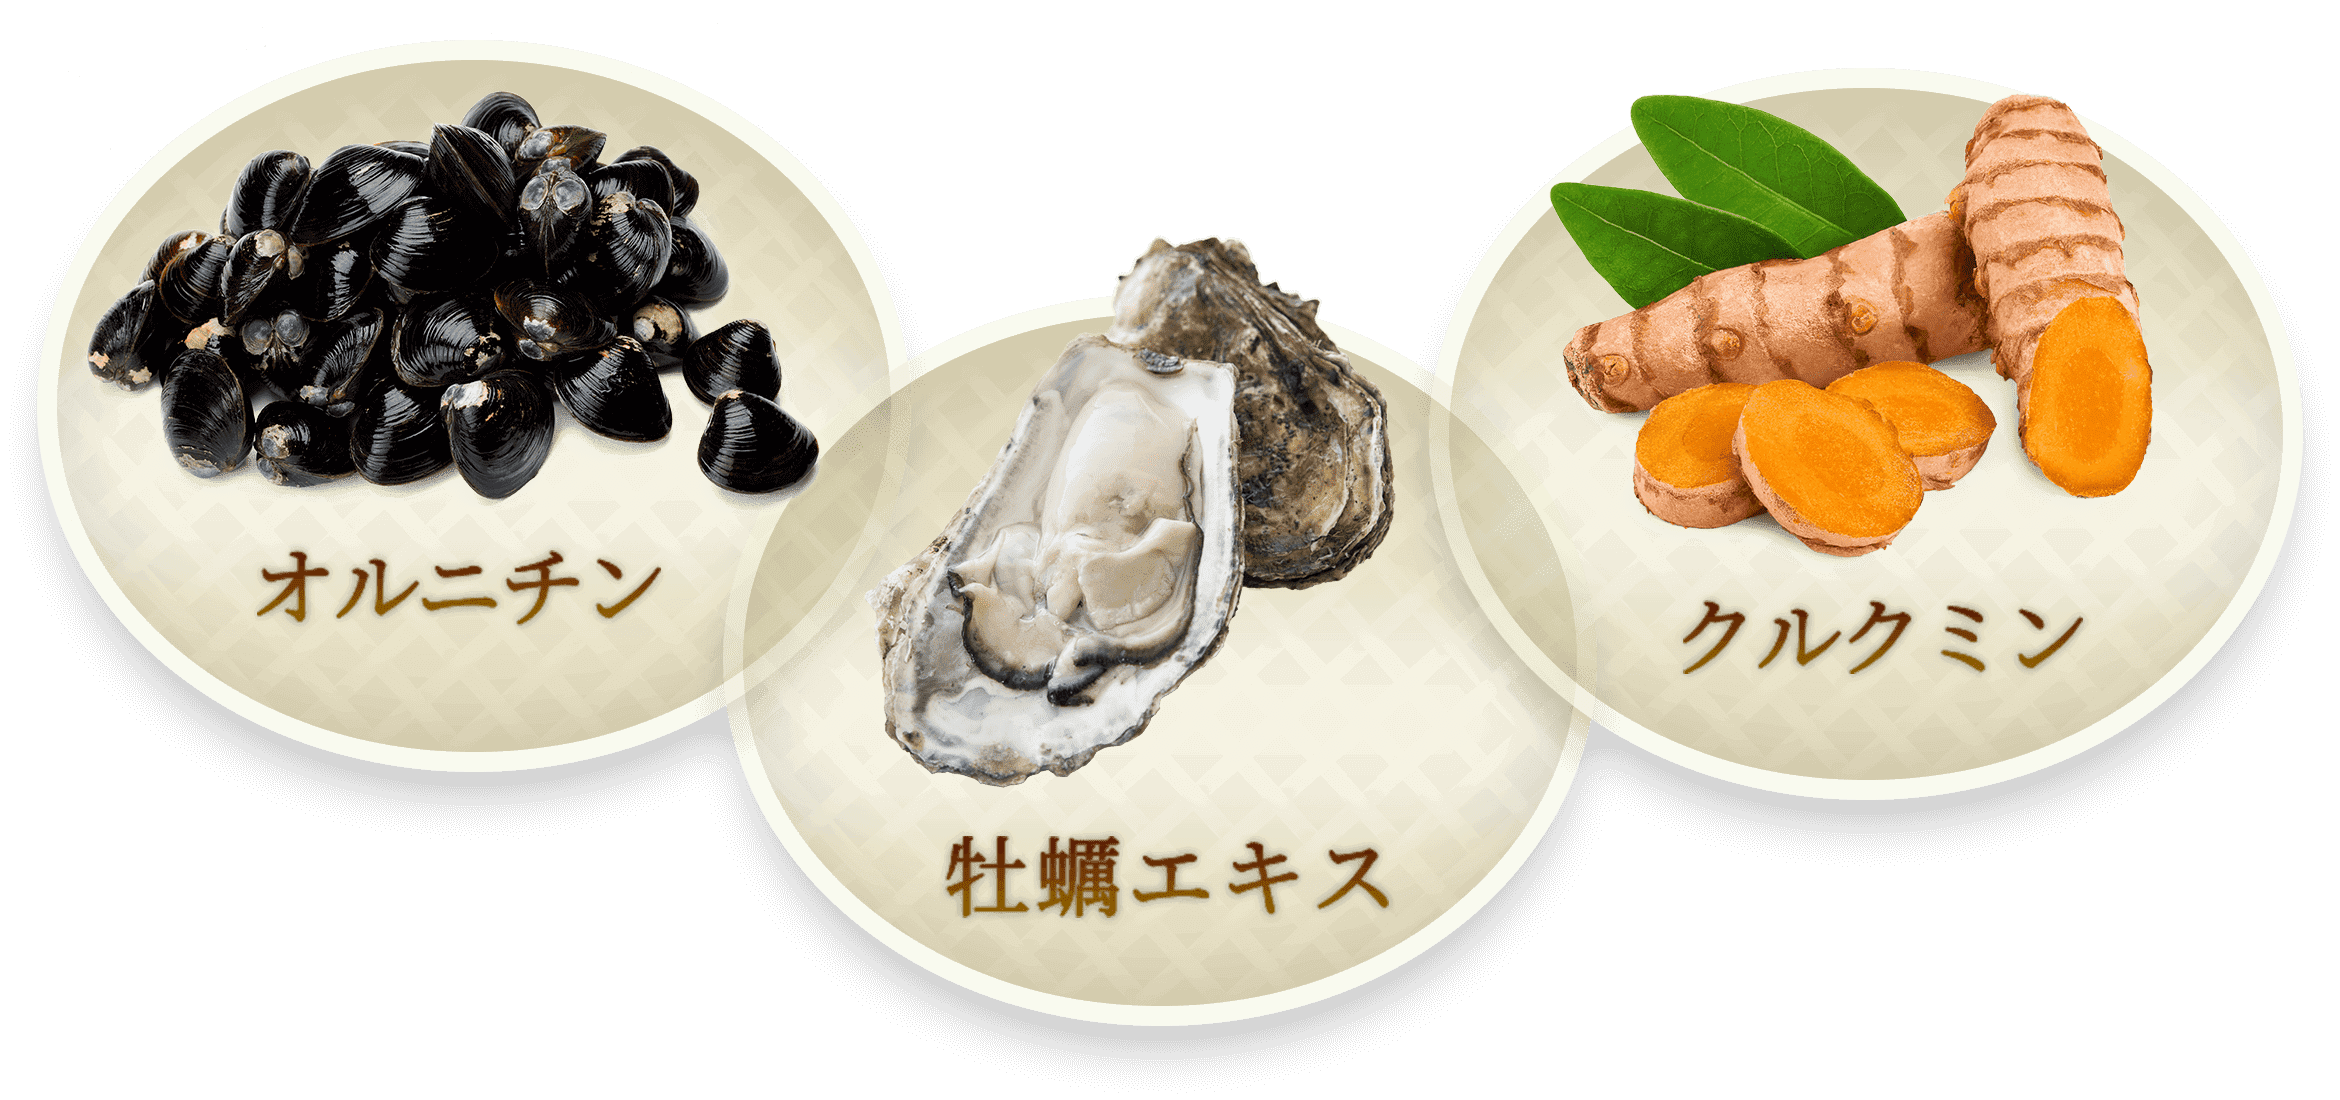 しじみの入った牡蠣ウコン | 健康食品のことなら井藤漢方製薬